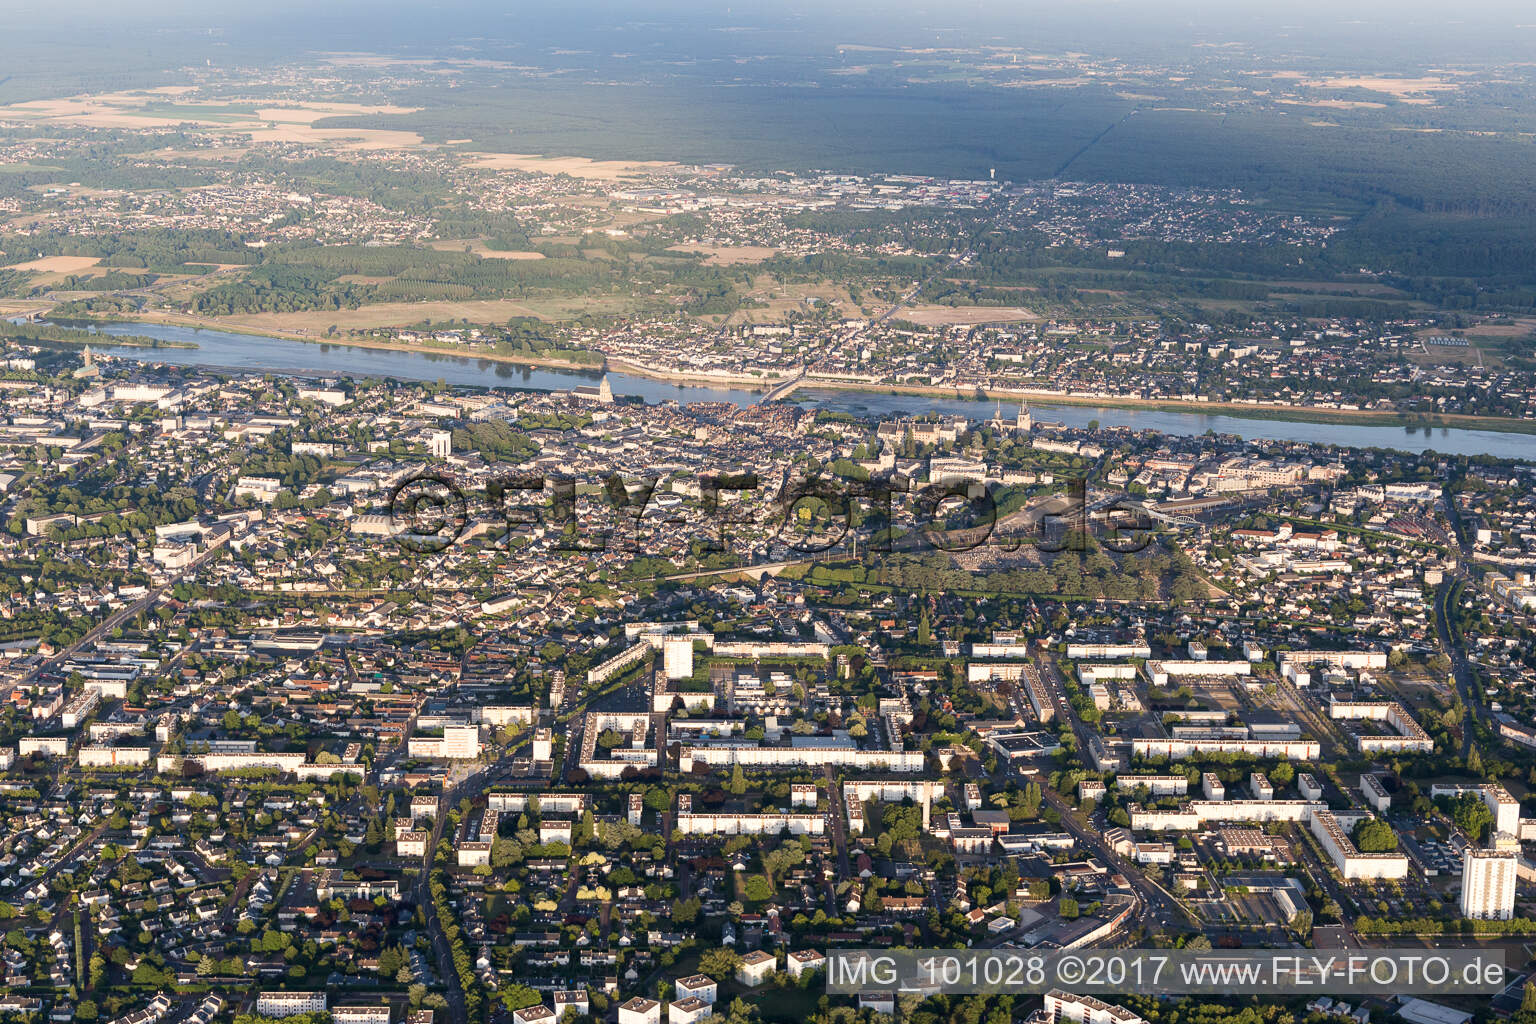 Blois im Bundesland Loir-et-Cher, Frankreich von der Drohne aus gesehen